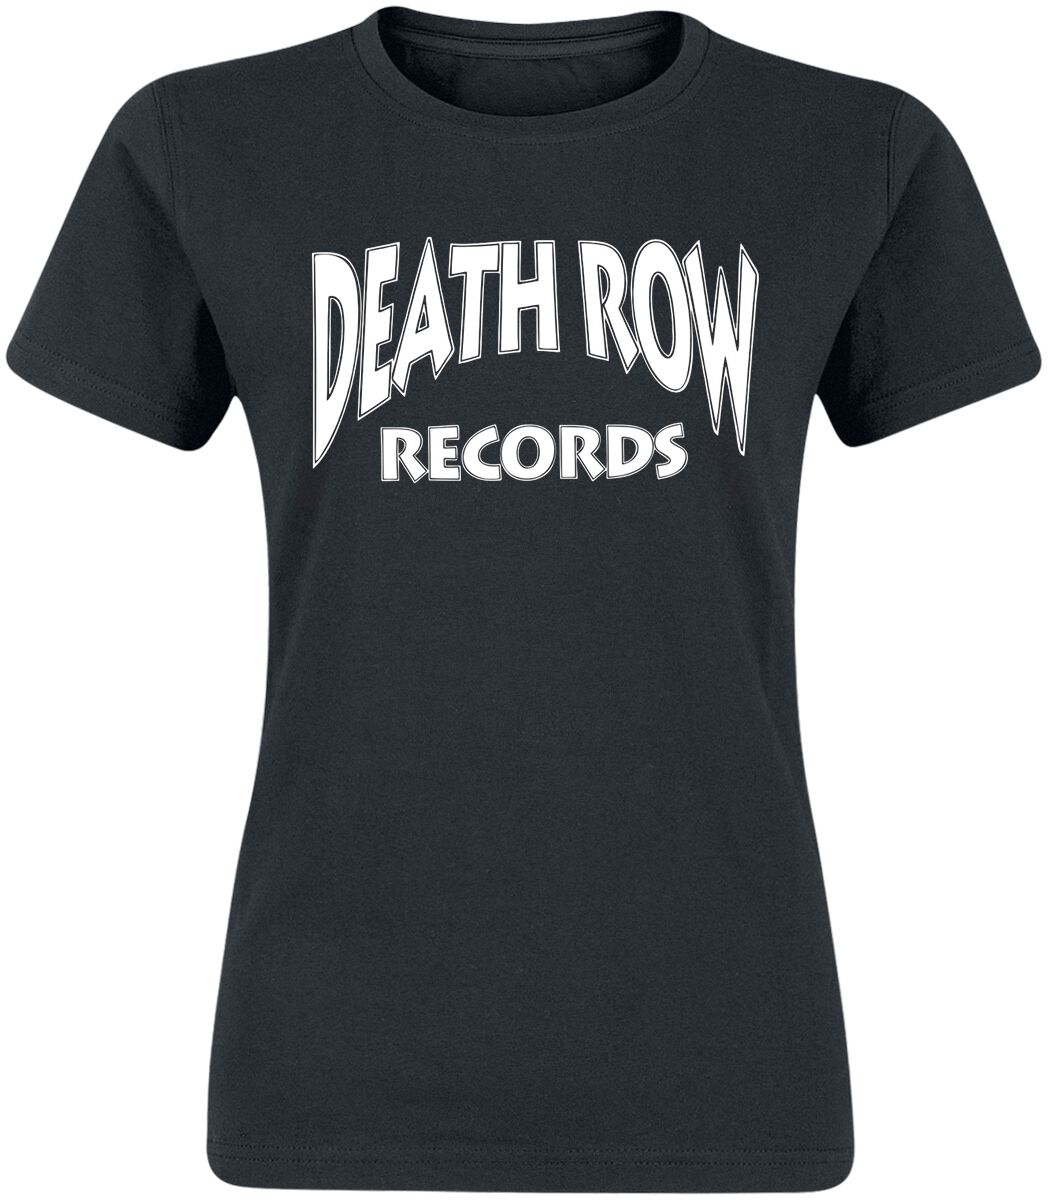 Death Row Records T-Shirt - Classic Logo - S bis XL - für Damen - Größe XL - schwarz  - Lizenziertes Merchandise!